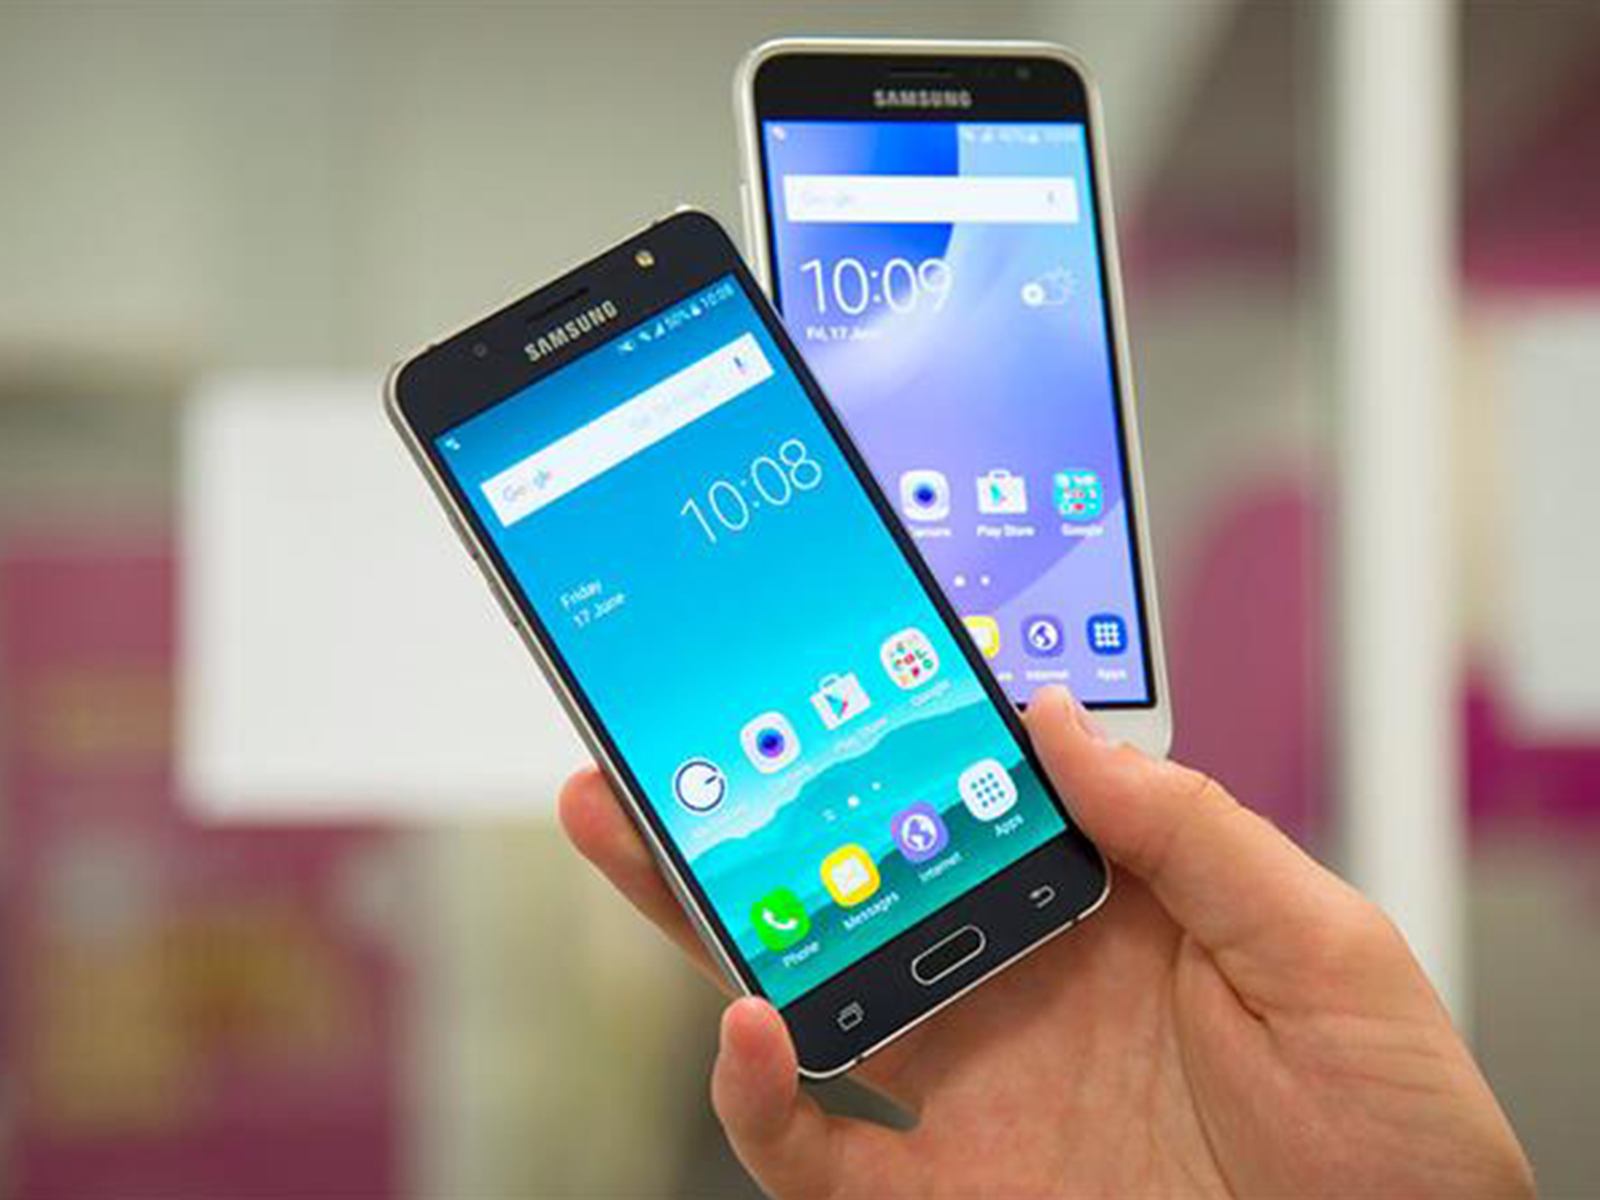 Samsung galaxy j2, j3, j5, j7 2017 - большой обзор всей линейки бюджетных смартфонов от самсунг, характеристики и сравнение с рынком, цены смартфонов - stevsky.ru - обзоры смартфонов, игры на андроид и на пк